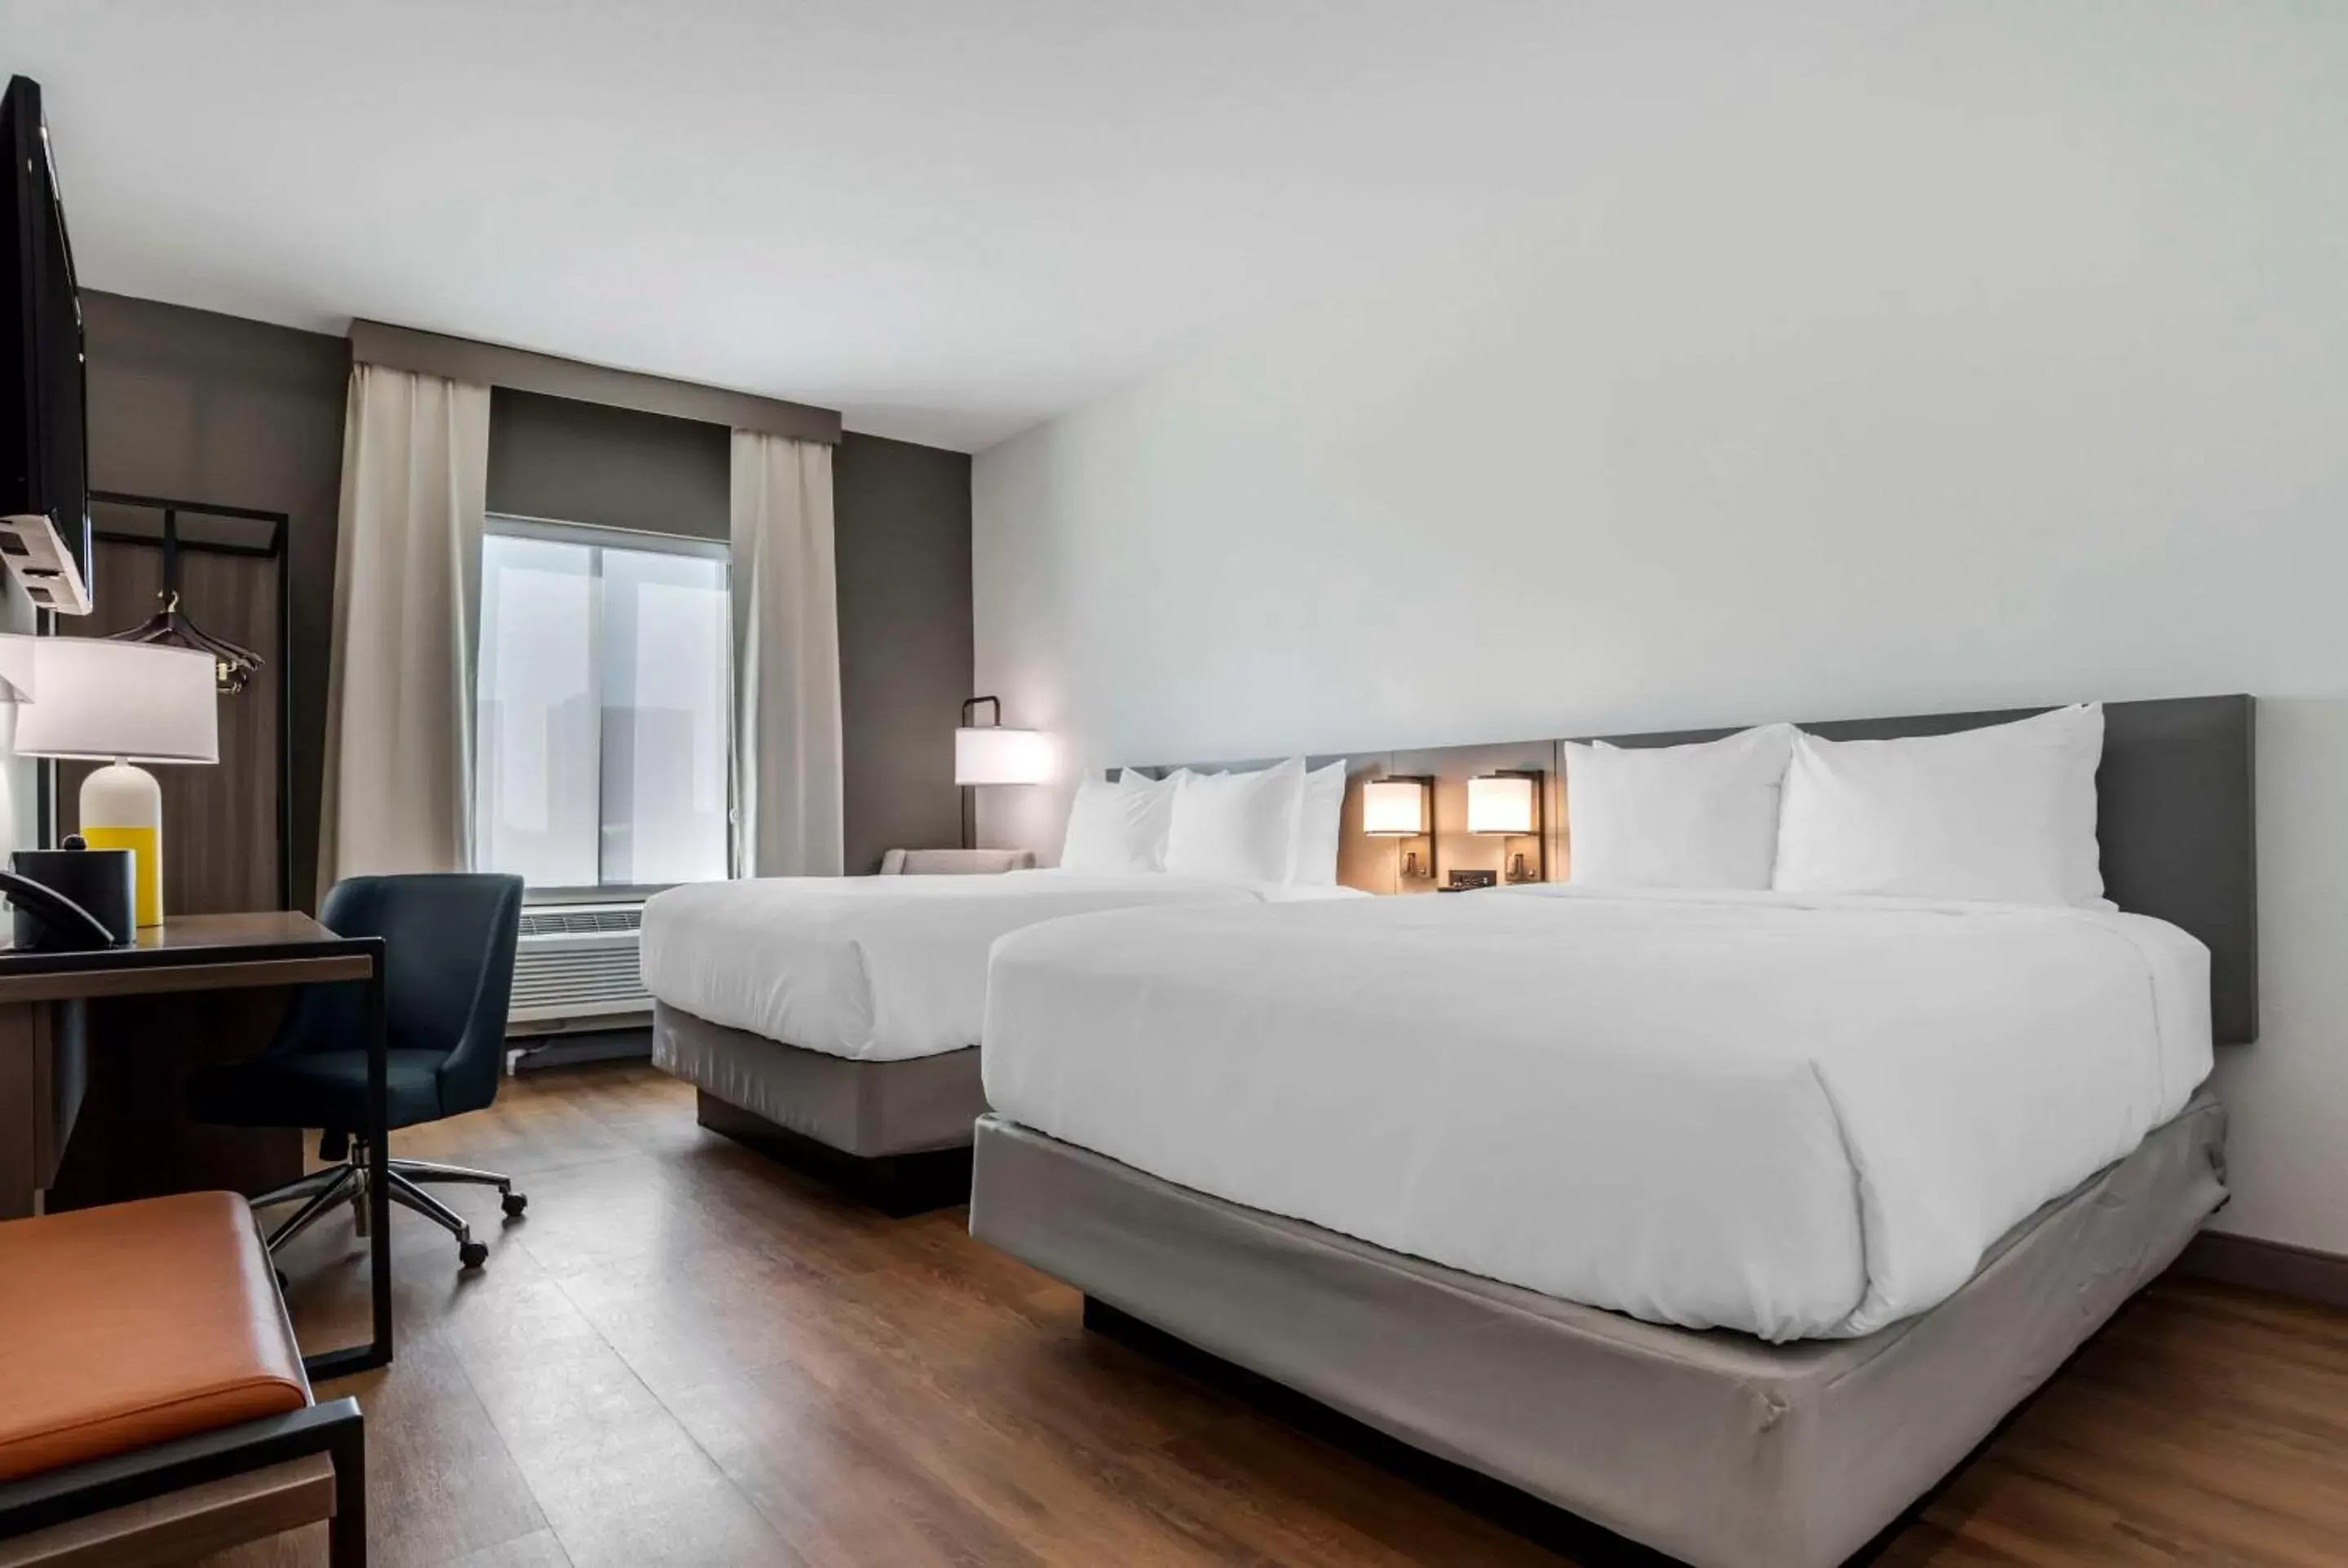 Bedroom, Bed in Comfort Inn & Suites Panama City Beach - Pier Park Area